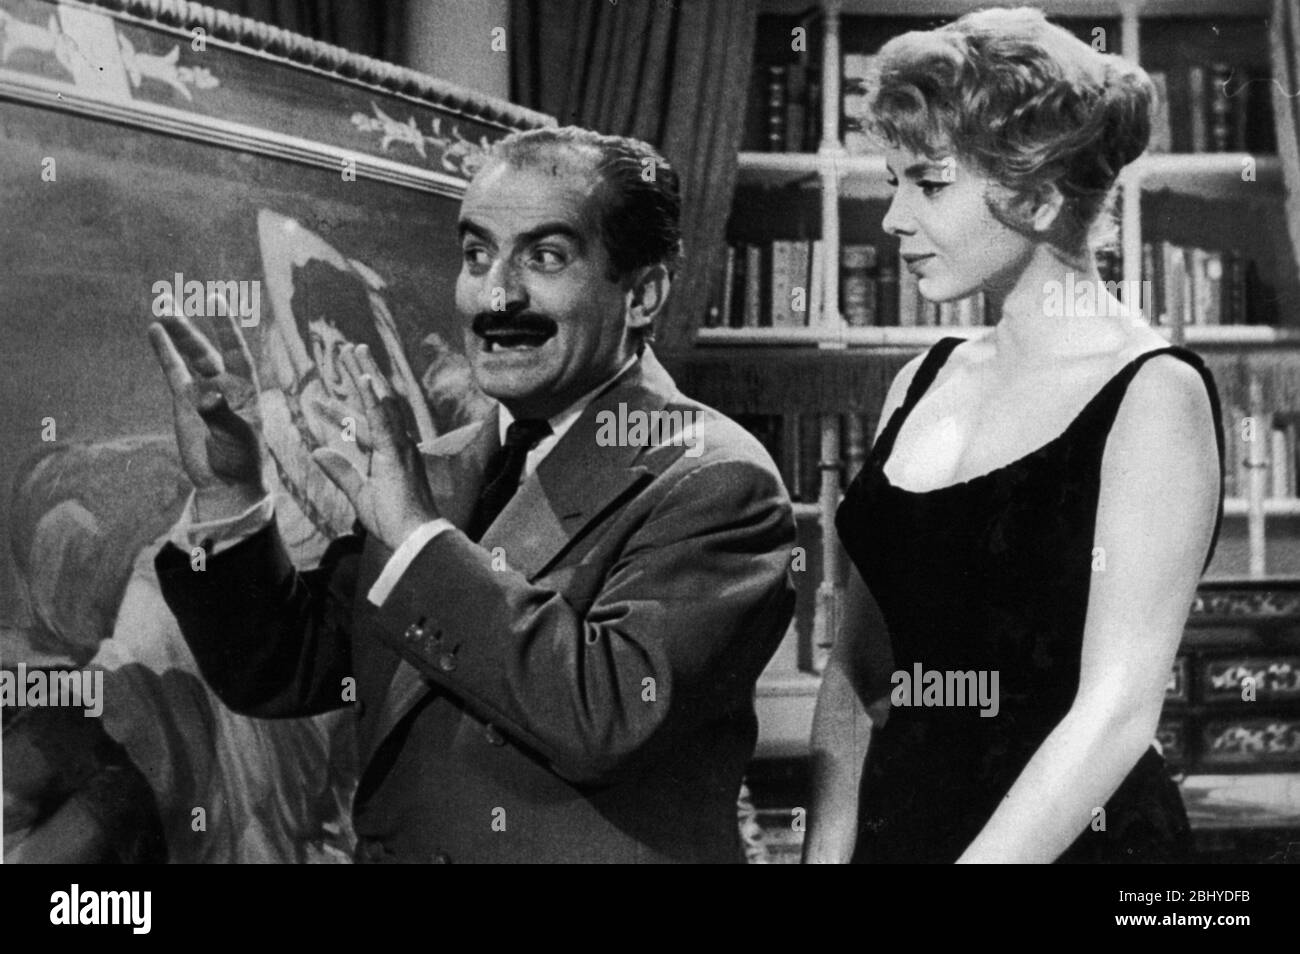 Totò, Eva e il pennello proibito Year: 1959 - Italy / France / Spain Louis  de Funès, Abbe Lane Director: Steno Stock Photo - Alamy